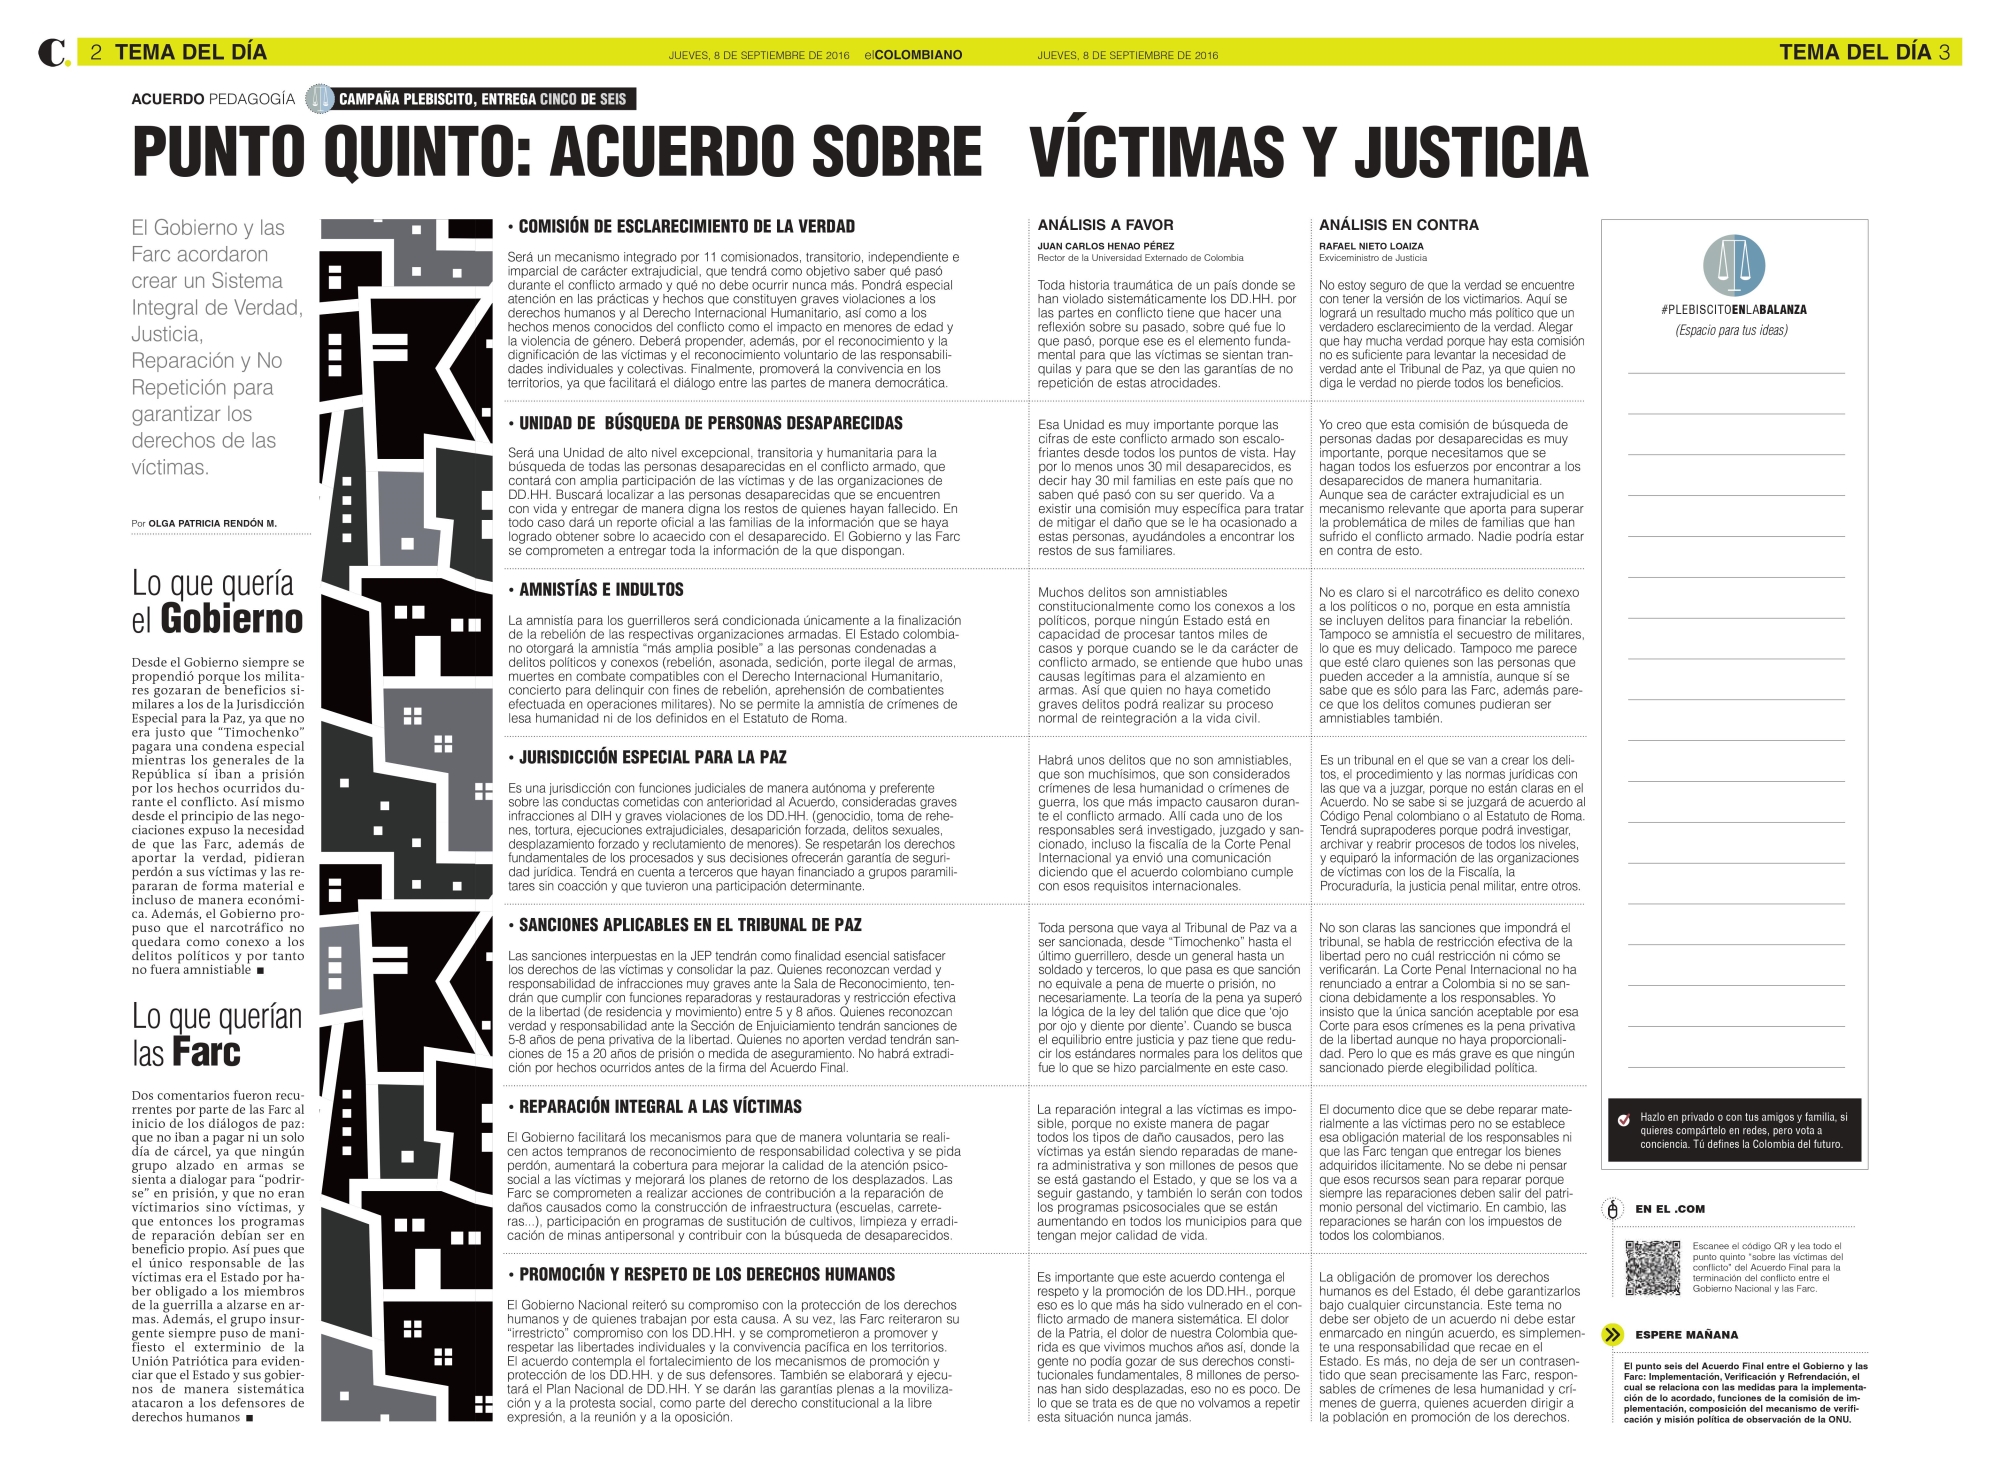 Punto quinto: acuerdo sobre víctimas y justicia